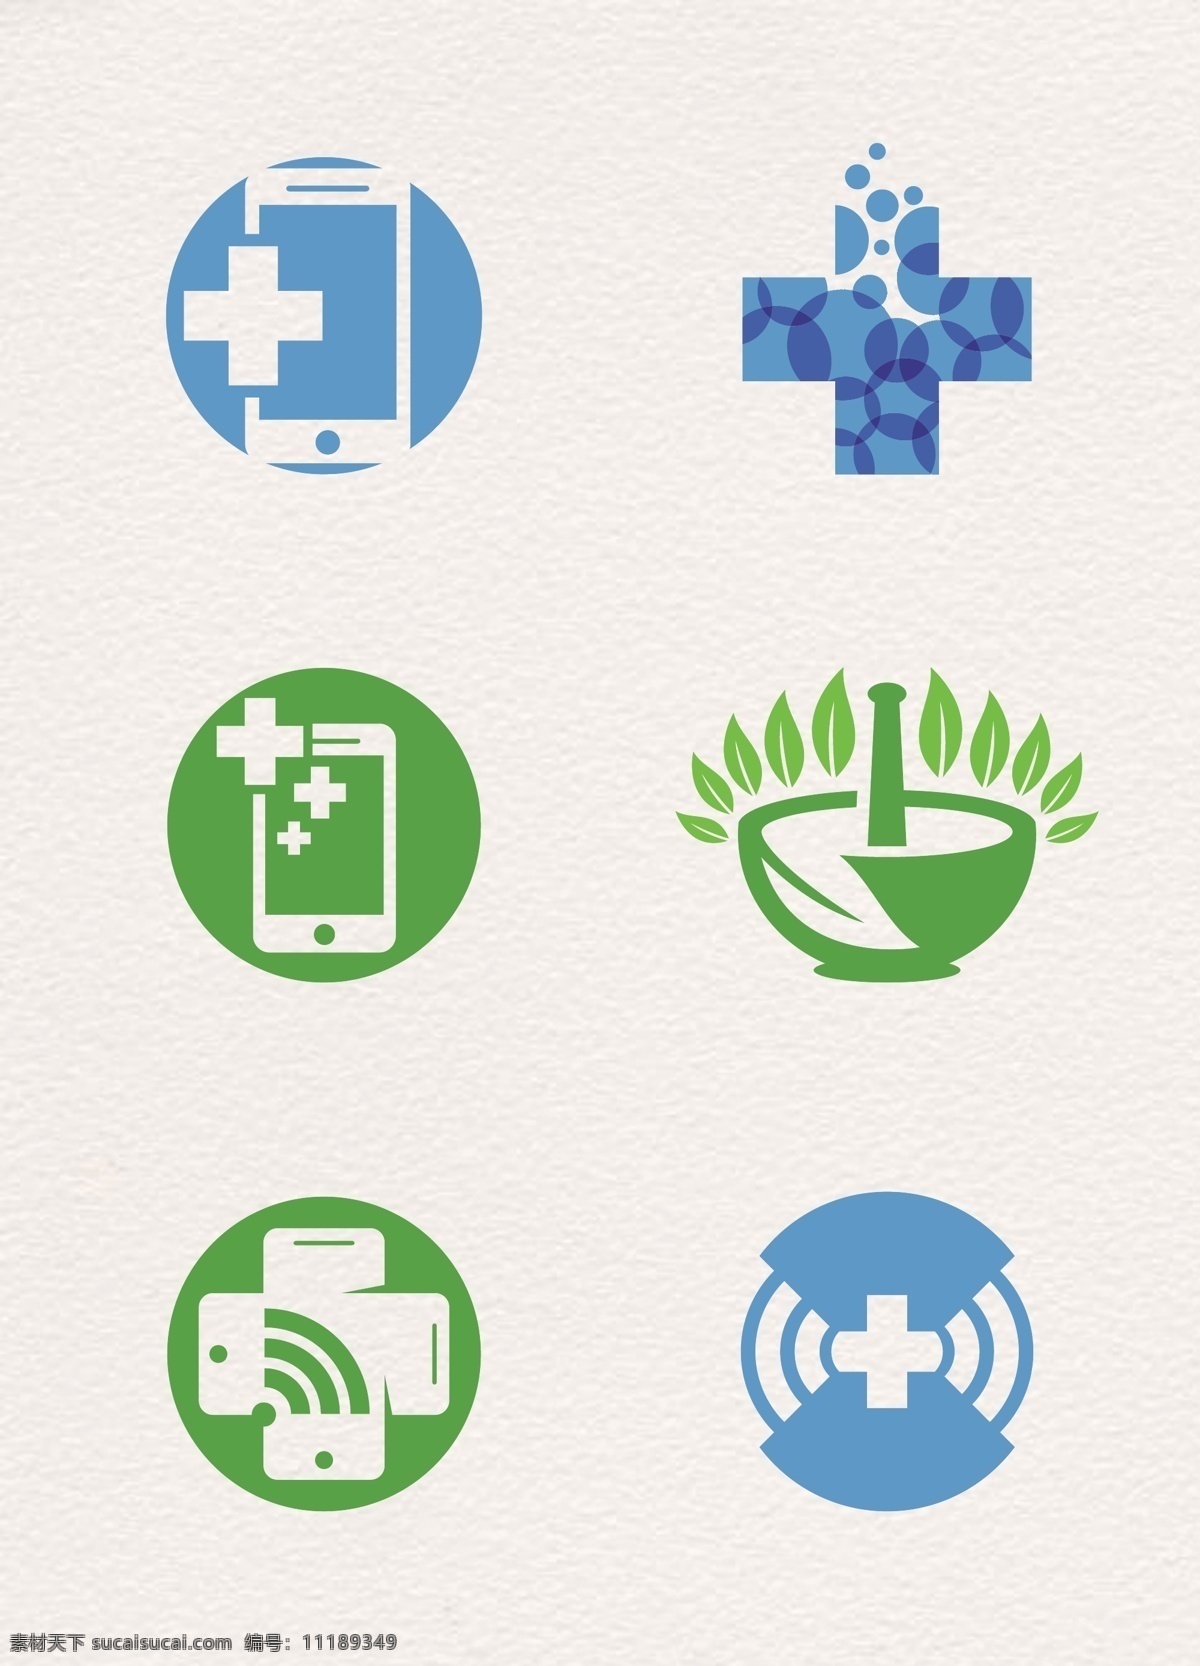 蓝绿色 卡通 医疗 图标 元素 蓝色 绿色 医学 矢量 十字架 手机医疗 捣药器